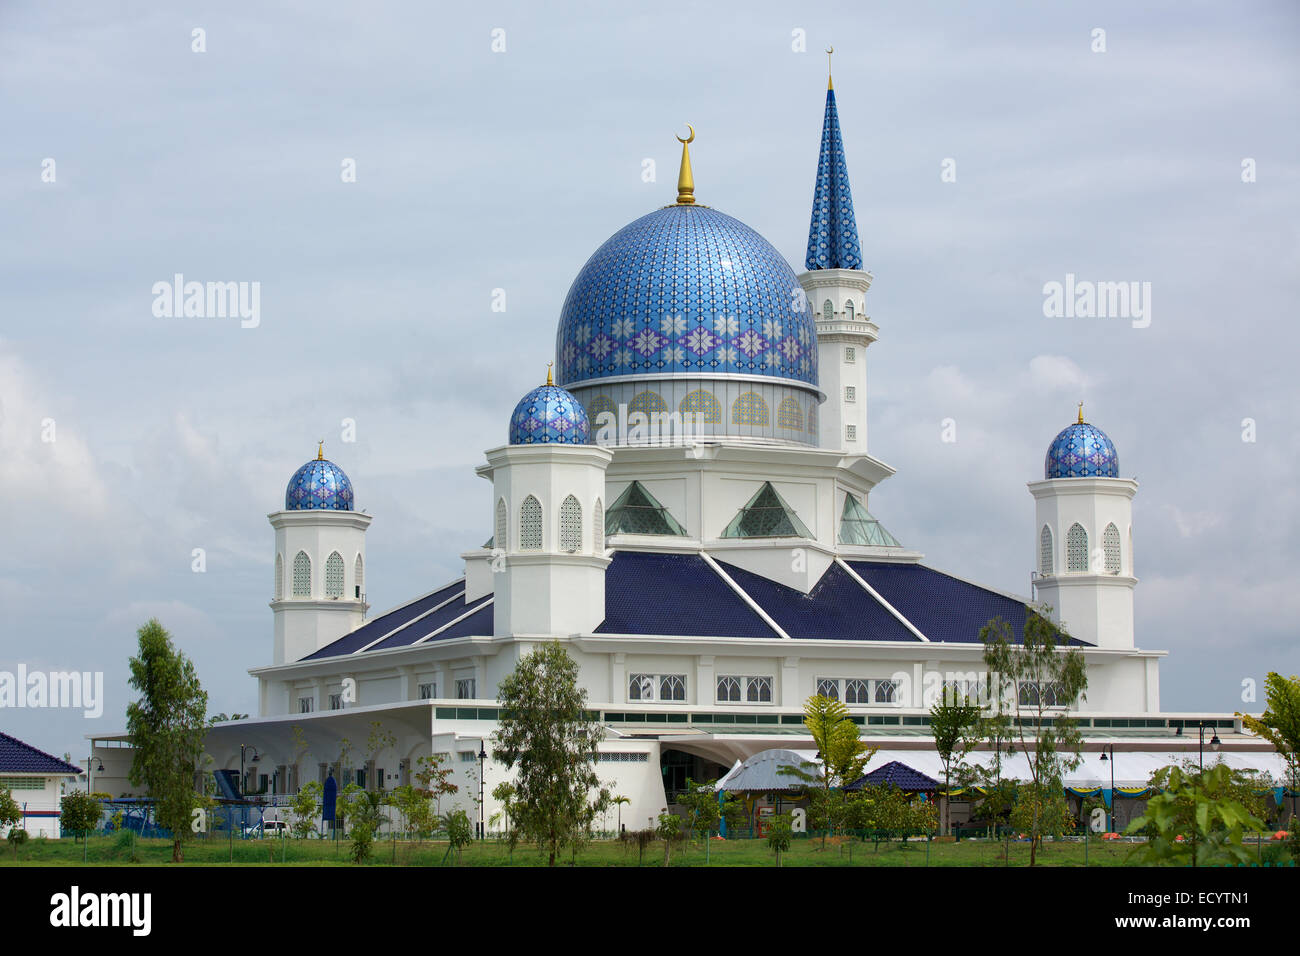 La gran mezquita en Kepala Batas en estado de Penang. Telas azules y techo alto minarete adornan esta impresionante estructura. Foto de stock